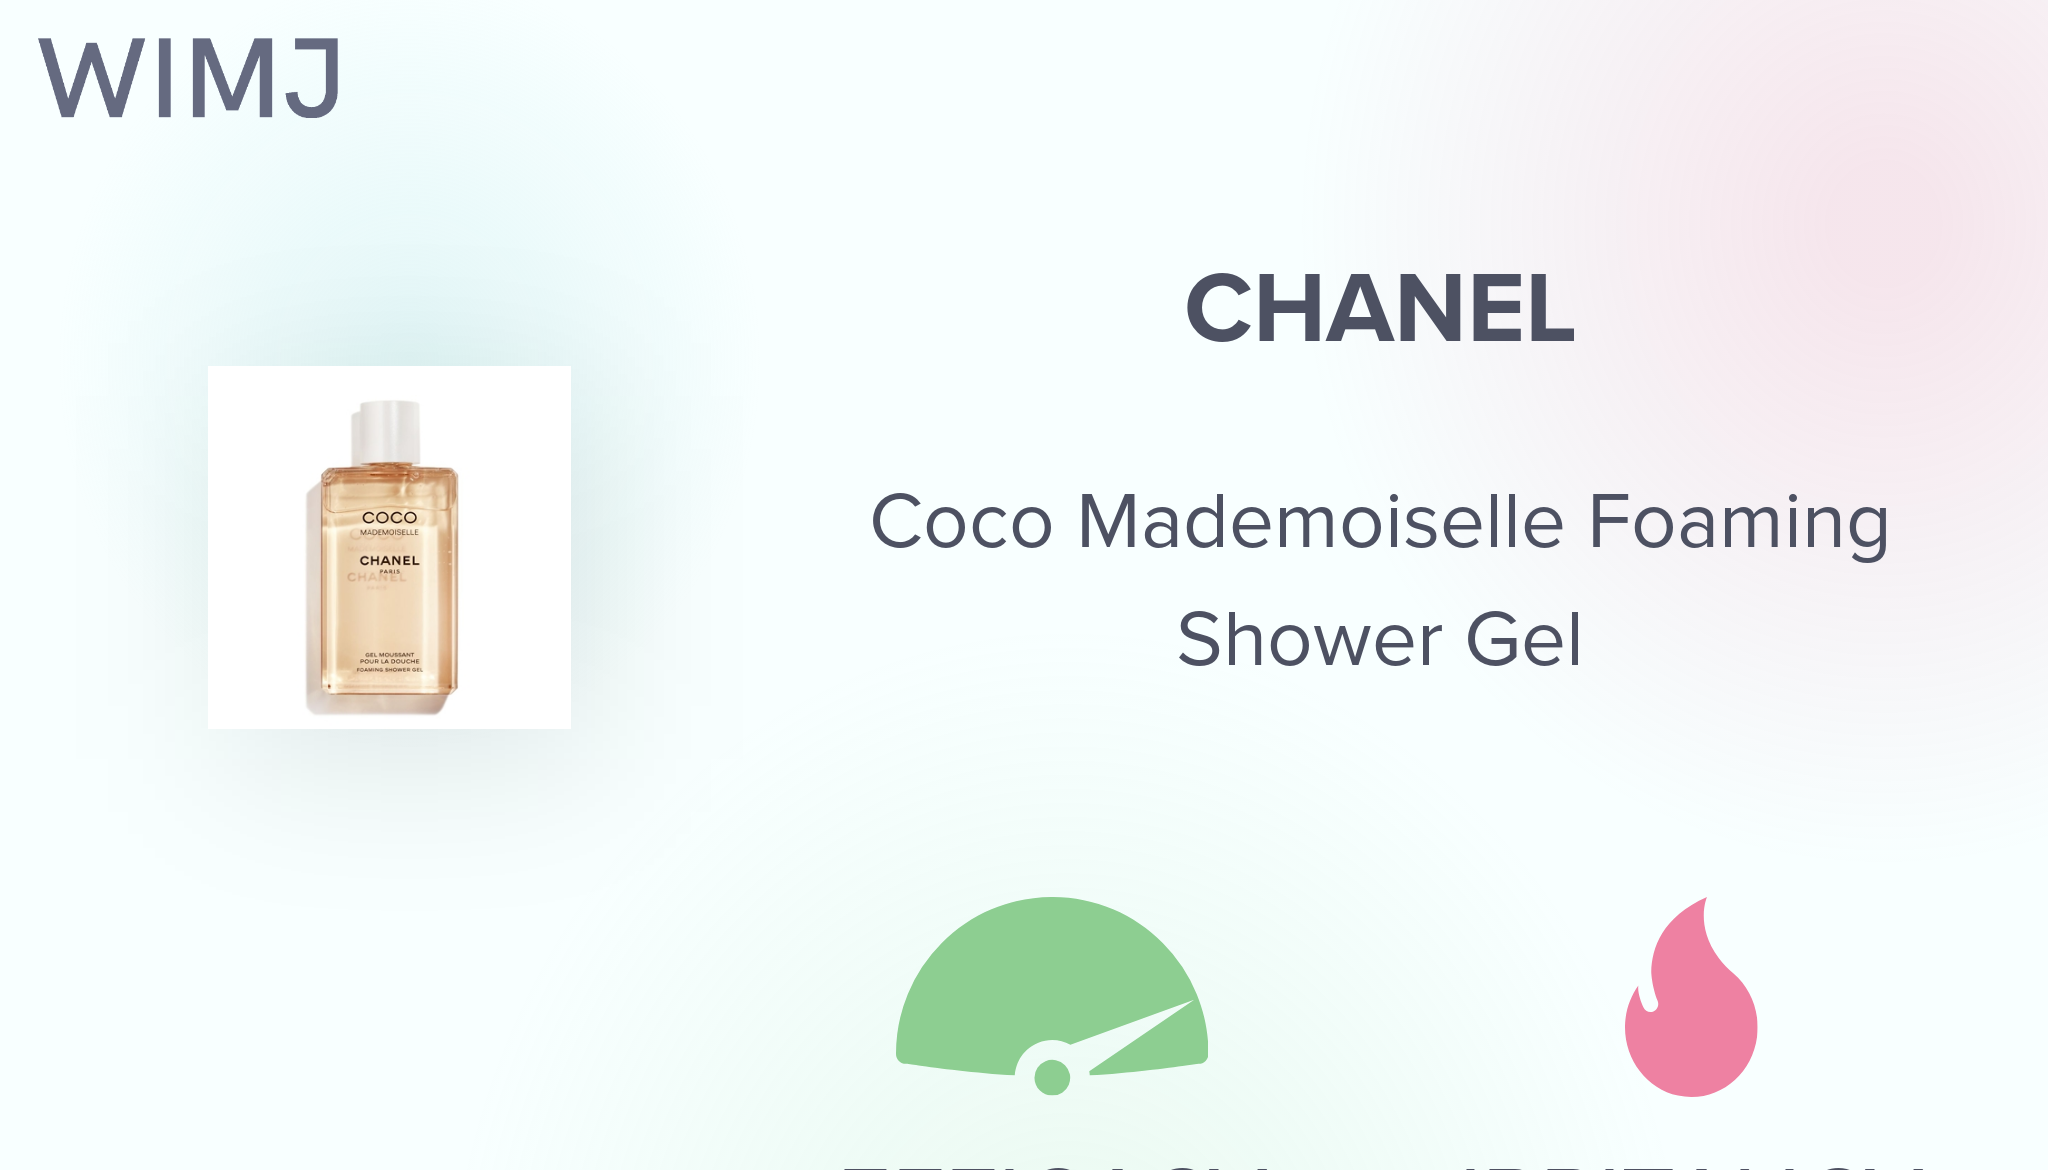 COCO MADEMOISELLE Foaming Shower Gel - CHANEL